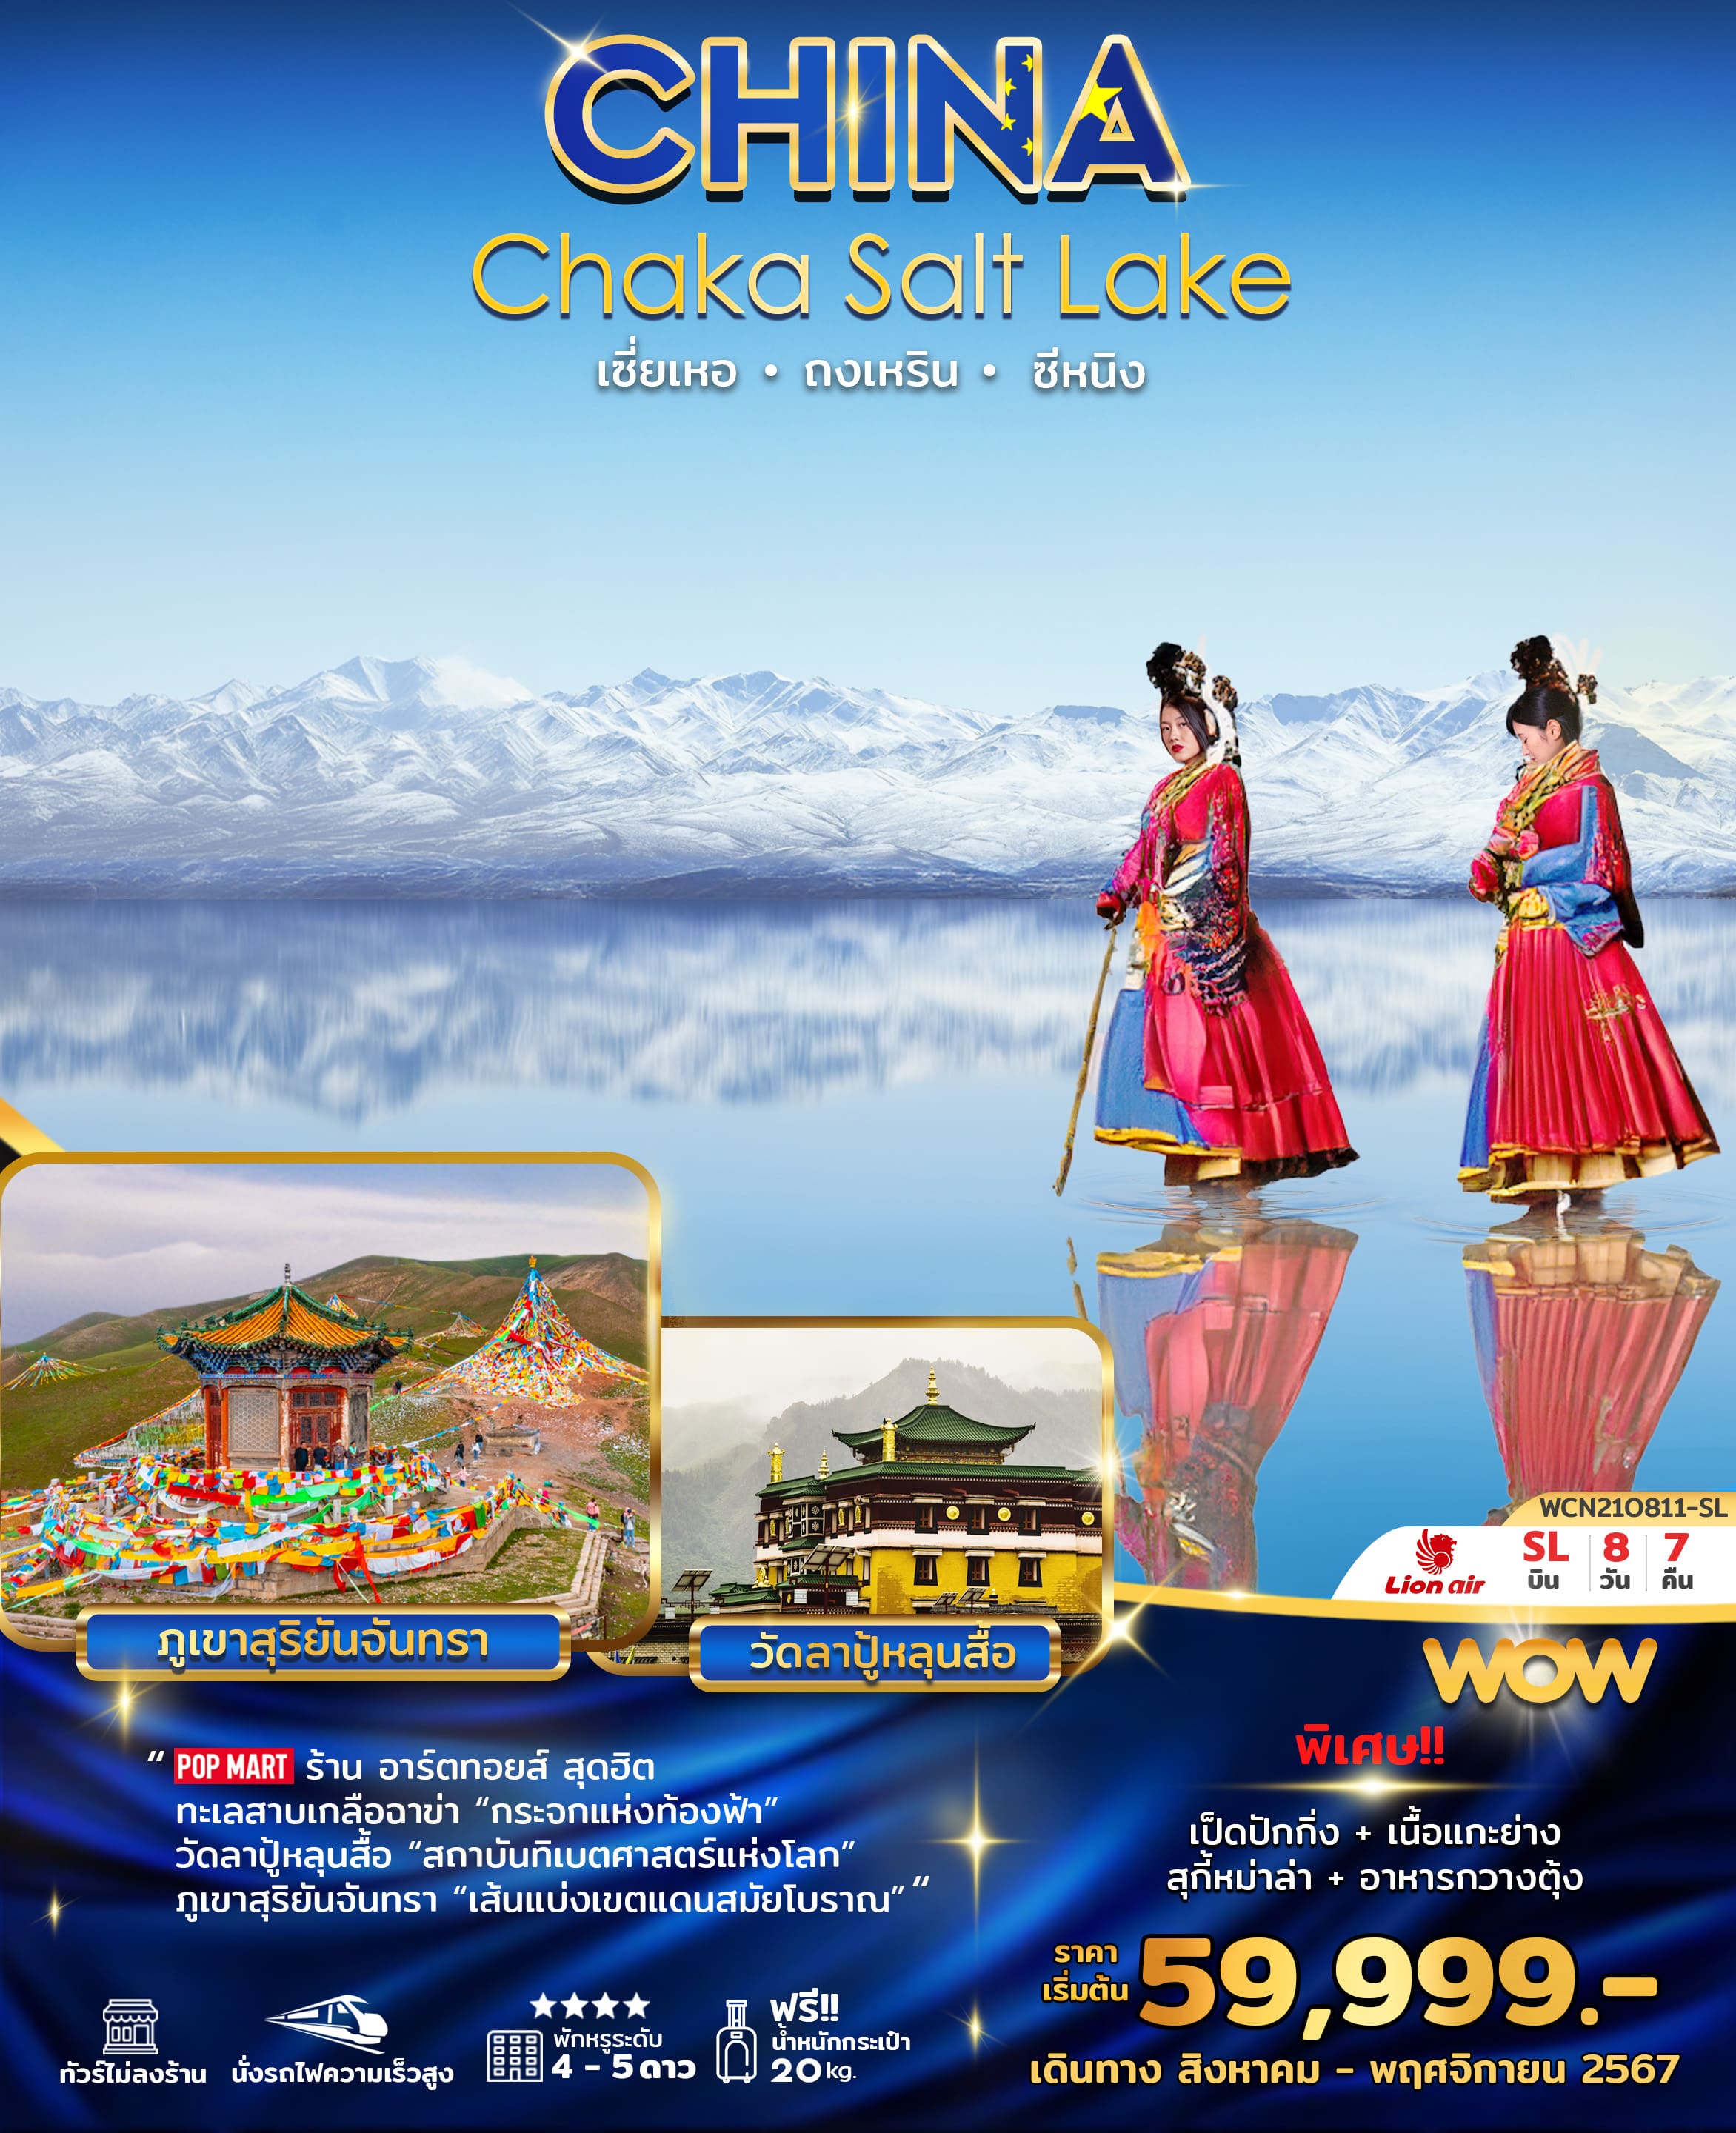 ทัวร์จีน Chaka Salt Lake ทะเลสาบเกลือฉาข่า กระจกแห่งท้องฟ้า เซี่ยเหอ ถงเหริน ซีหนิง 8วัน 7คืน (SL)